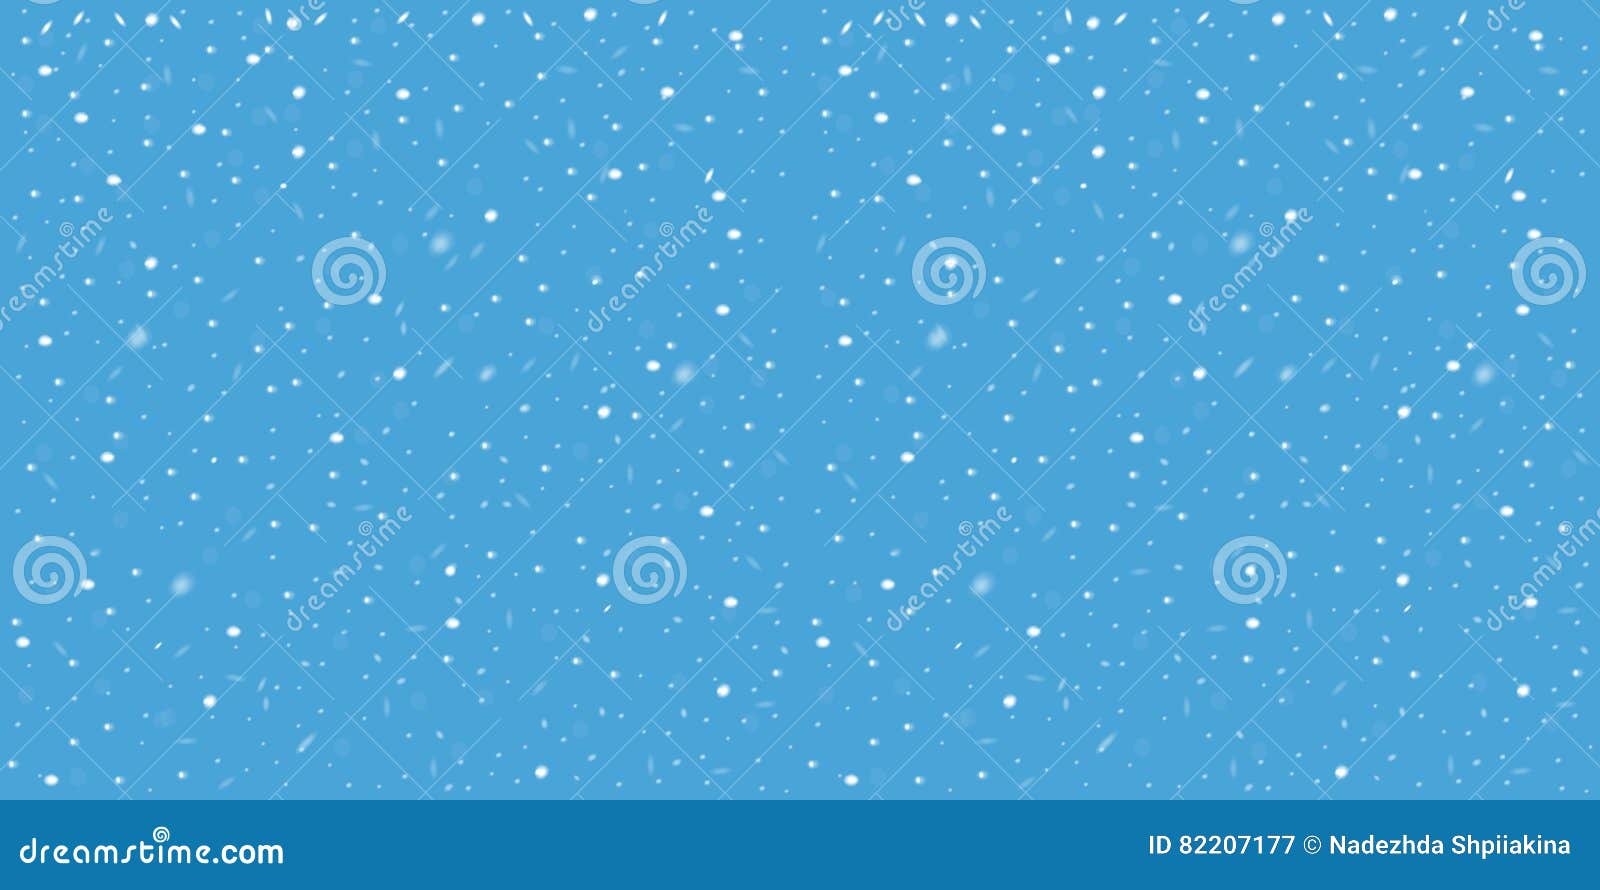 50+] Live Snowflake Wallpaper - WallpaperSafari